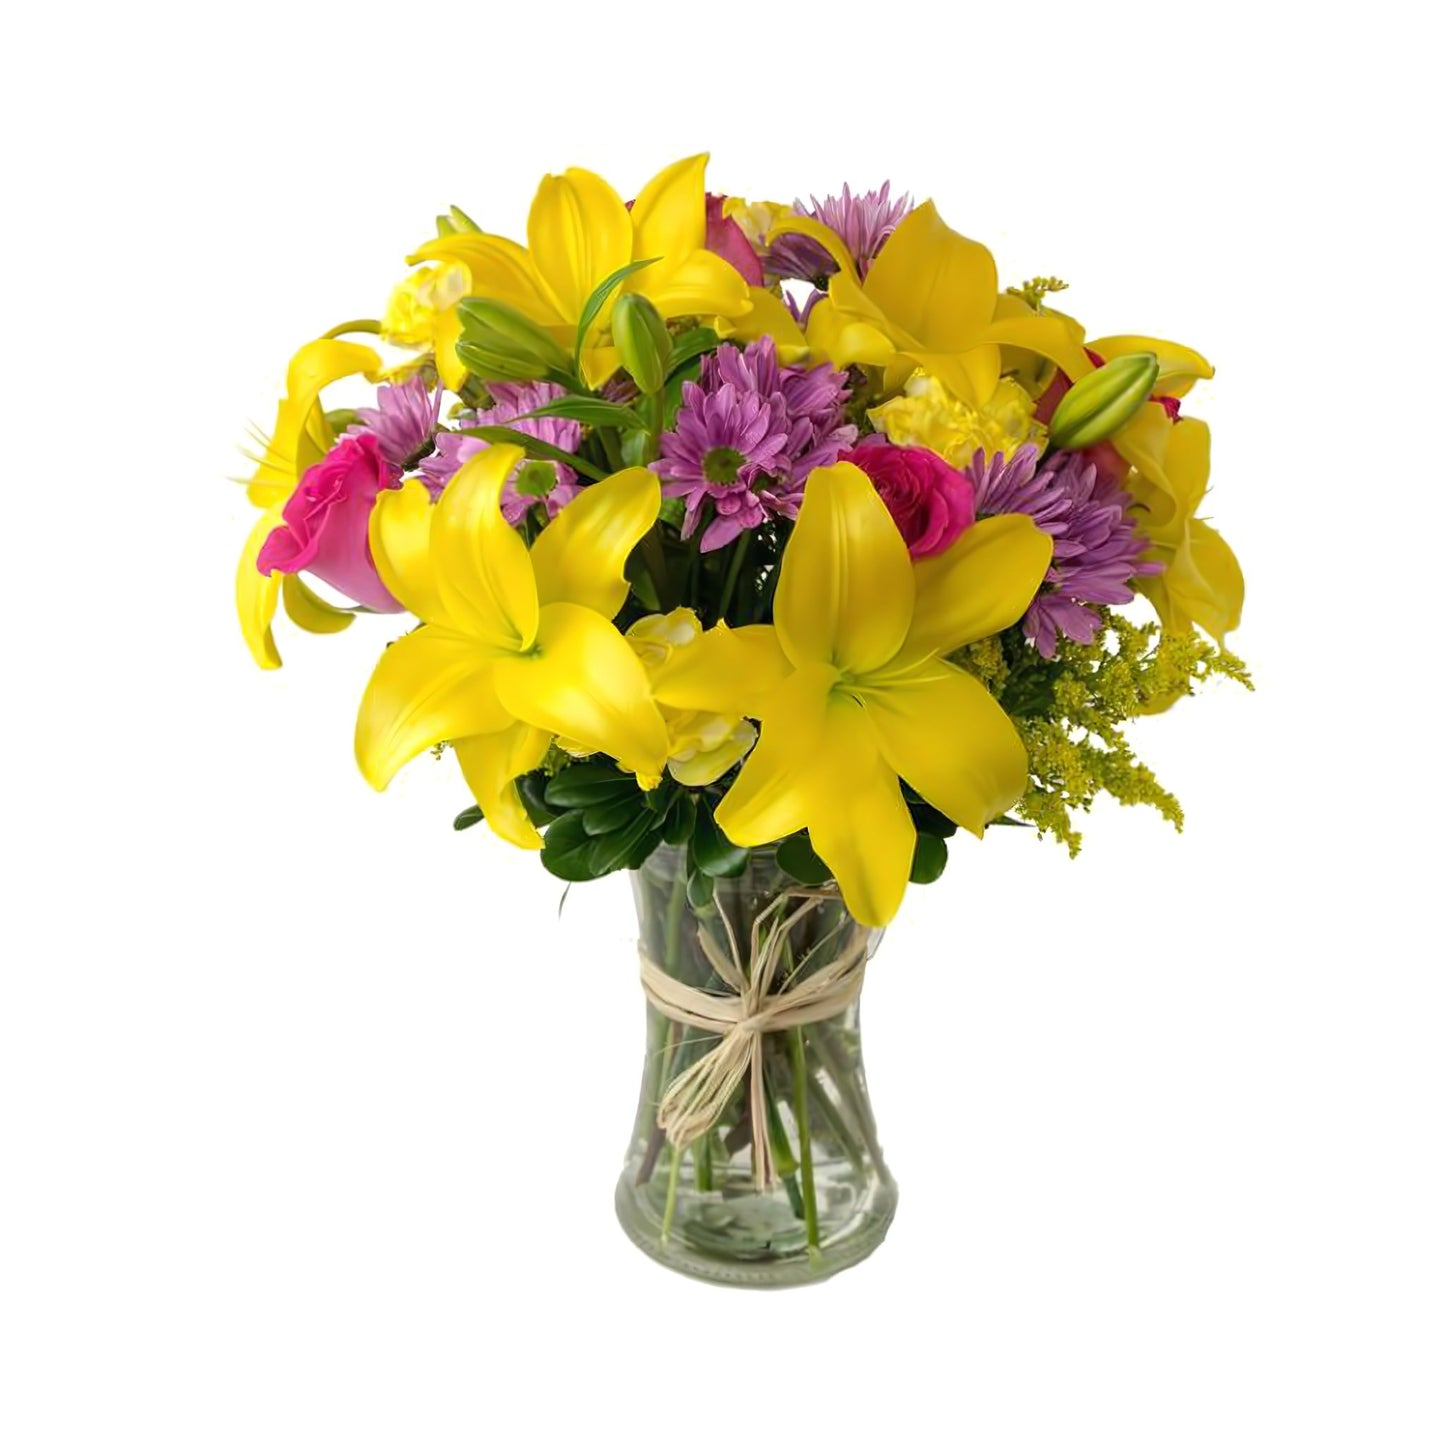 Pastels Dreams - Floral Arrangement - Queens Flower Delivery